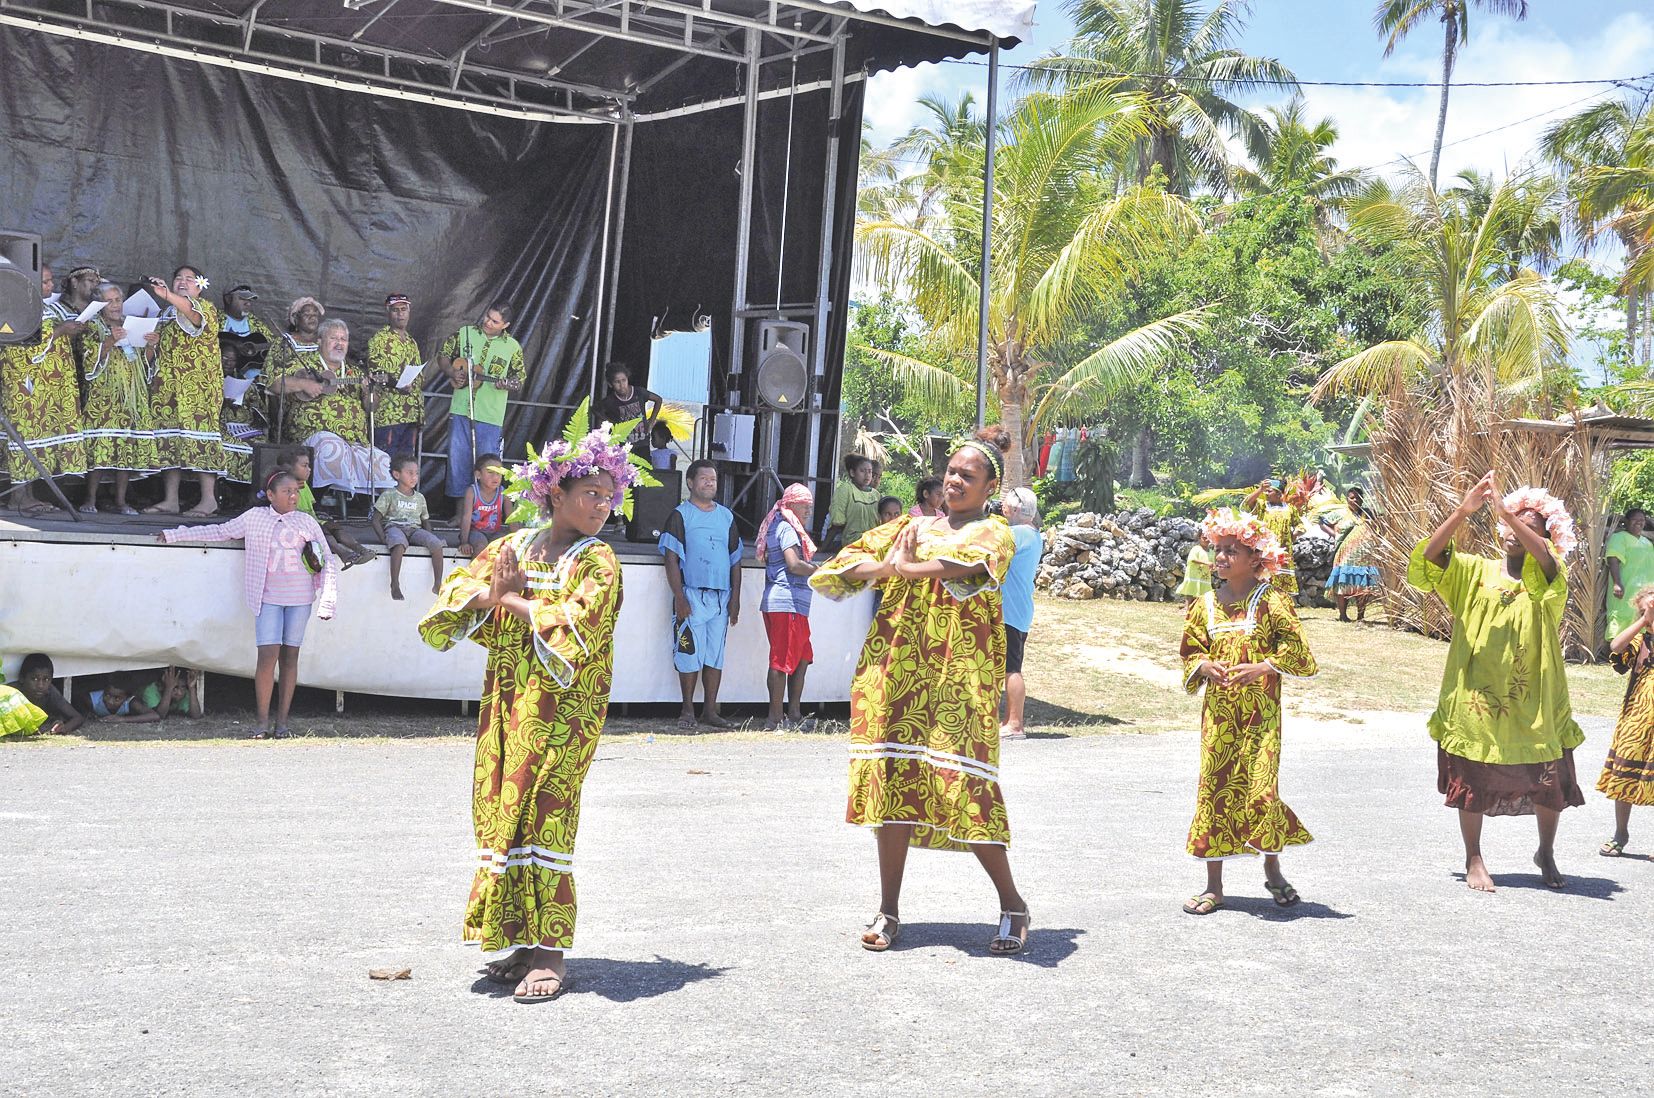 C’est au rythme des ukulélés du pasteur, de sa femme et de son fils, d’origine tahitienne, que les jeunes filles de la tribu ont dansé avant le repas. Depuis leur arrivée à Maré, les jeunes mêlent souvent les deux cultures dans leurs spectacles.